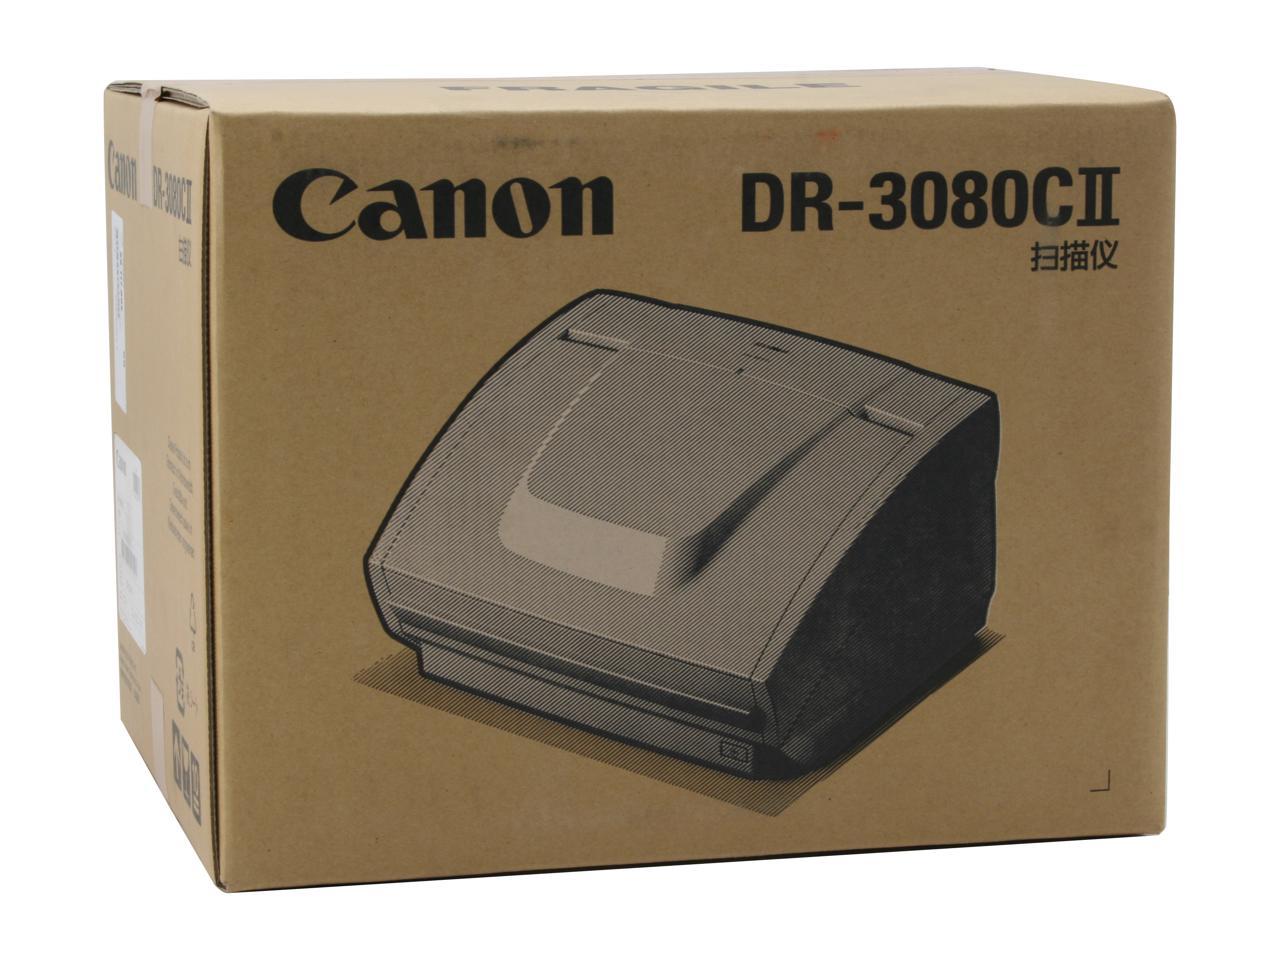 canon dr 3080cii specs